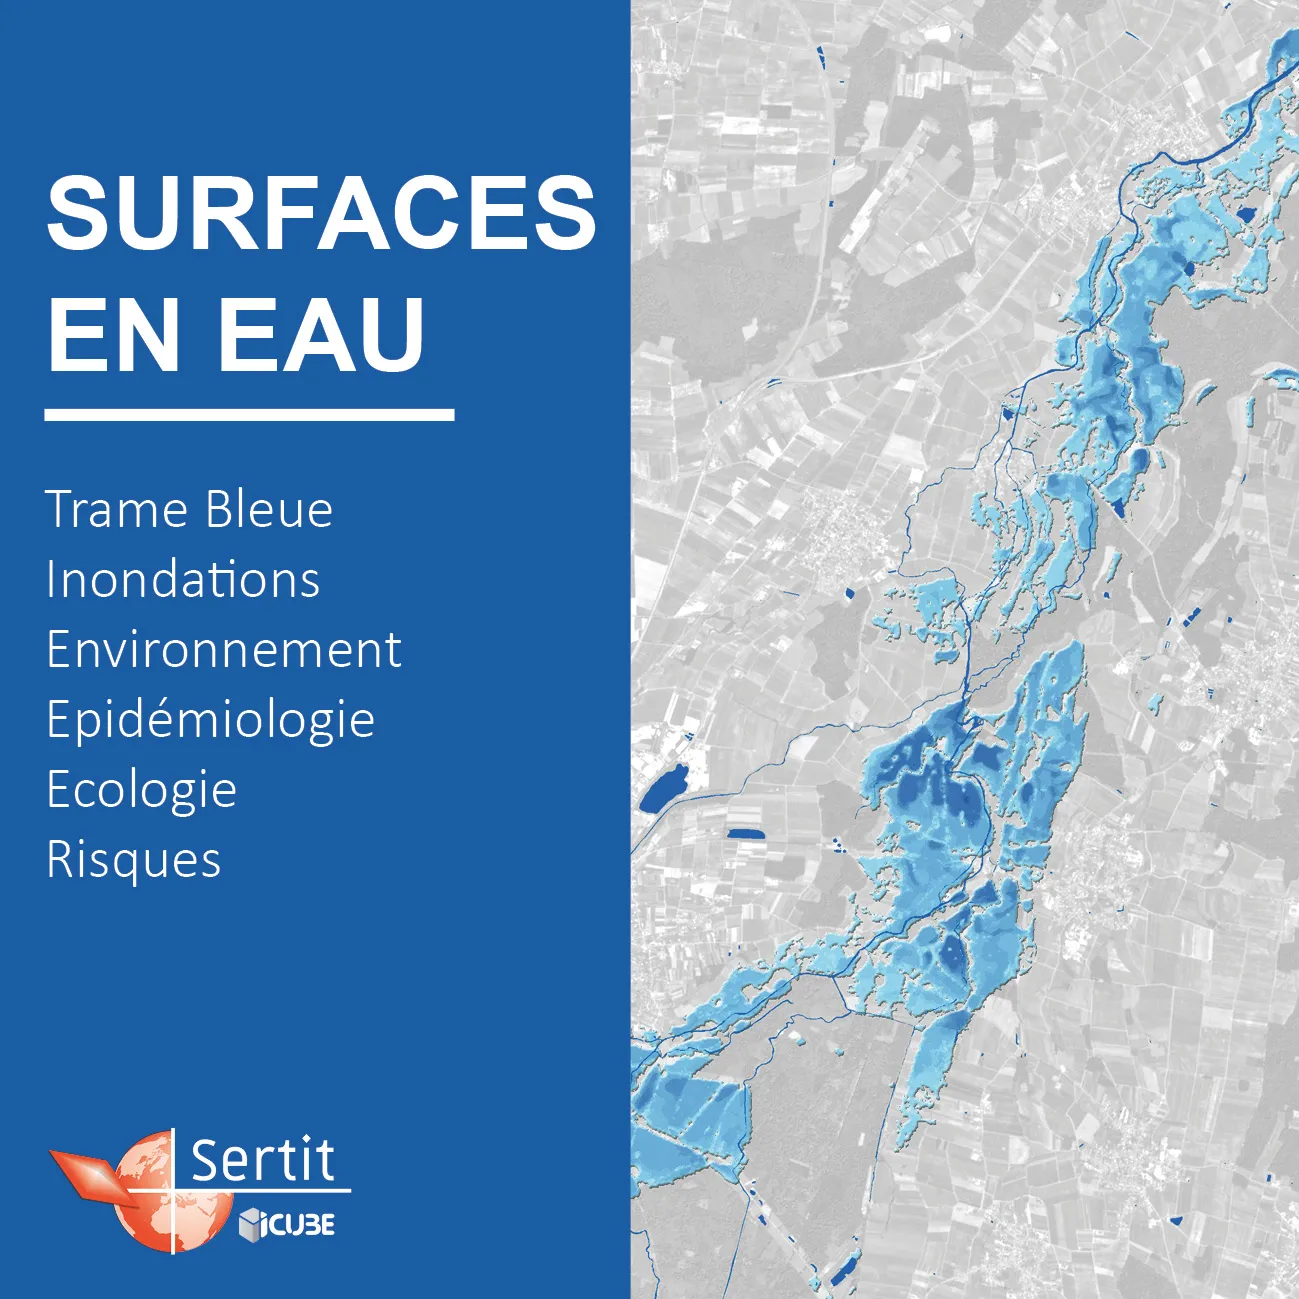 Surface en eau: Trame Bleue, Inondations, Environnement, Epidémiologie, Ecologie, Risques